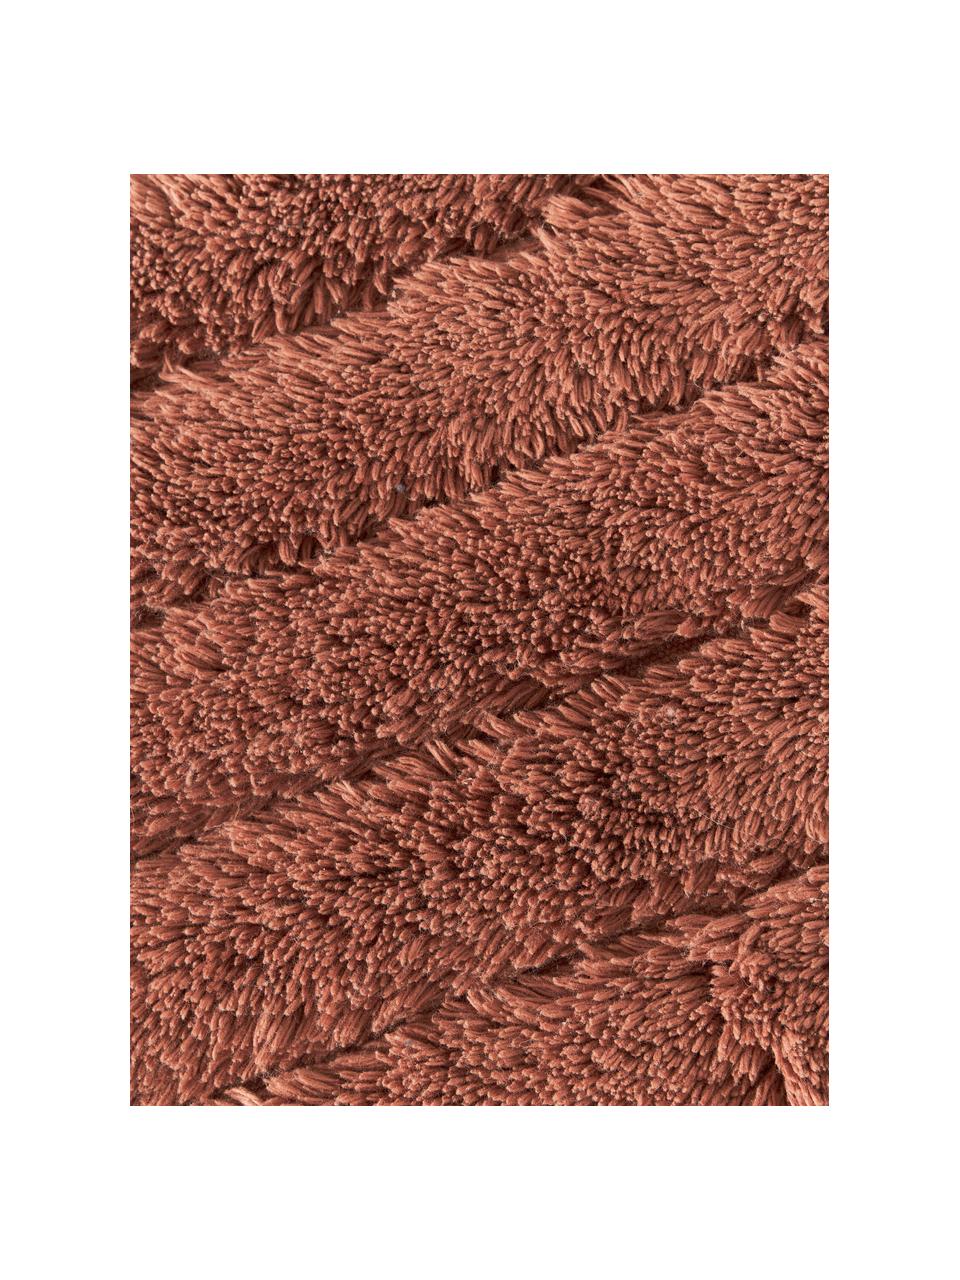 Puszysty dywanik łazienkowy Bailey, 100% bawełna

Ten produkt został przetestowany pod kątem substancji szkodliwych i certyfikowany zgodnie z STANDARD 100 by OEKO-TEX®21.HIN.45298 HOHENSTEIN HTTI, Terakota, S 50 x D 70 cm